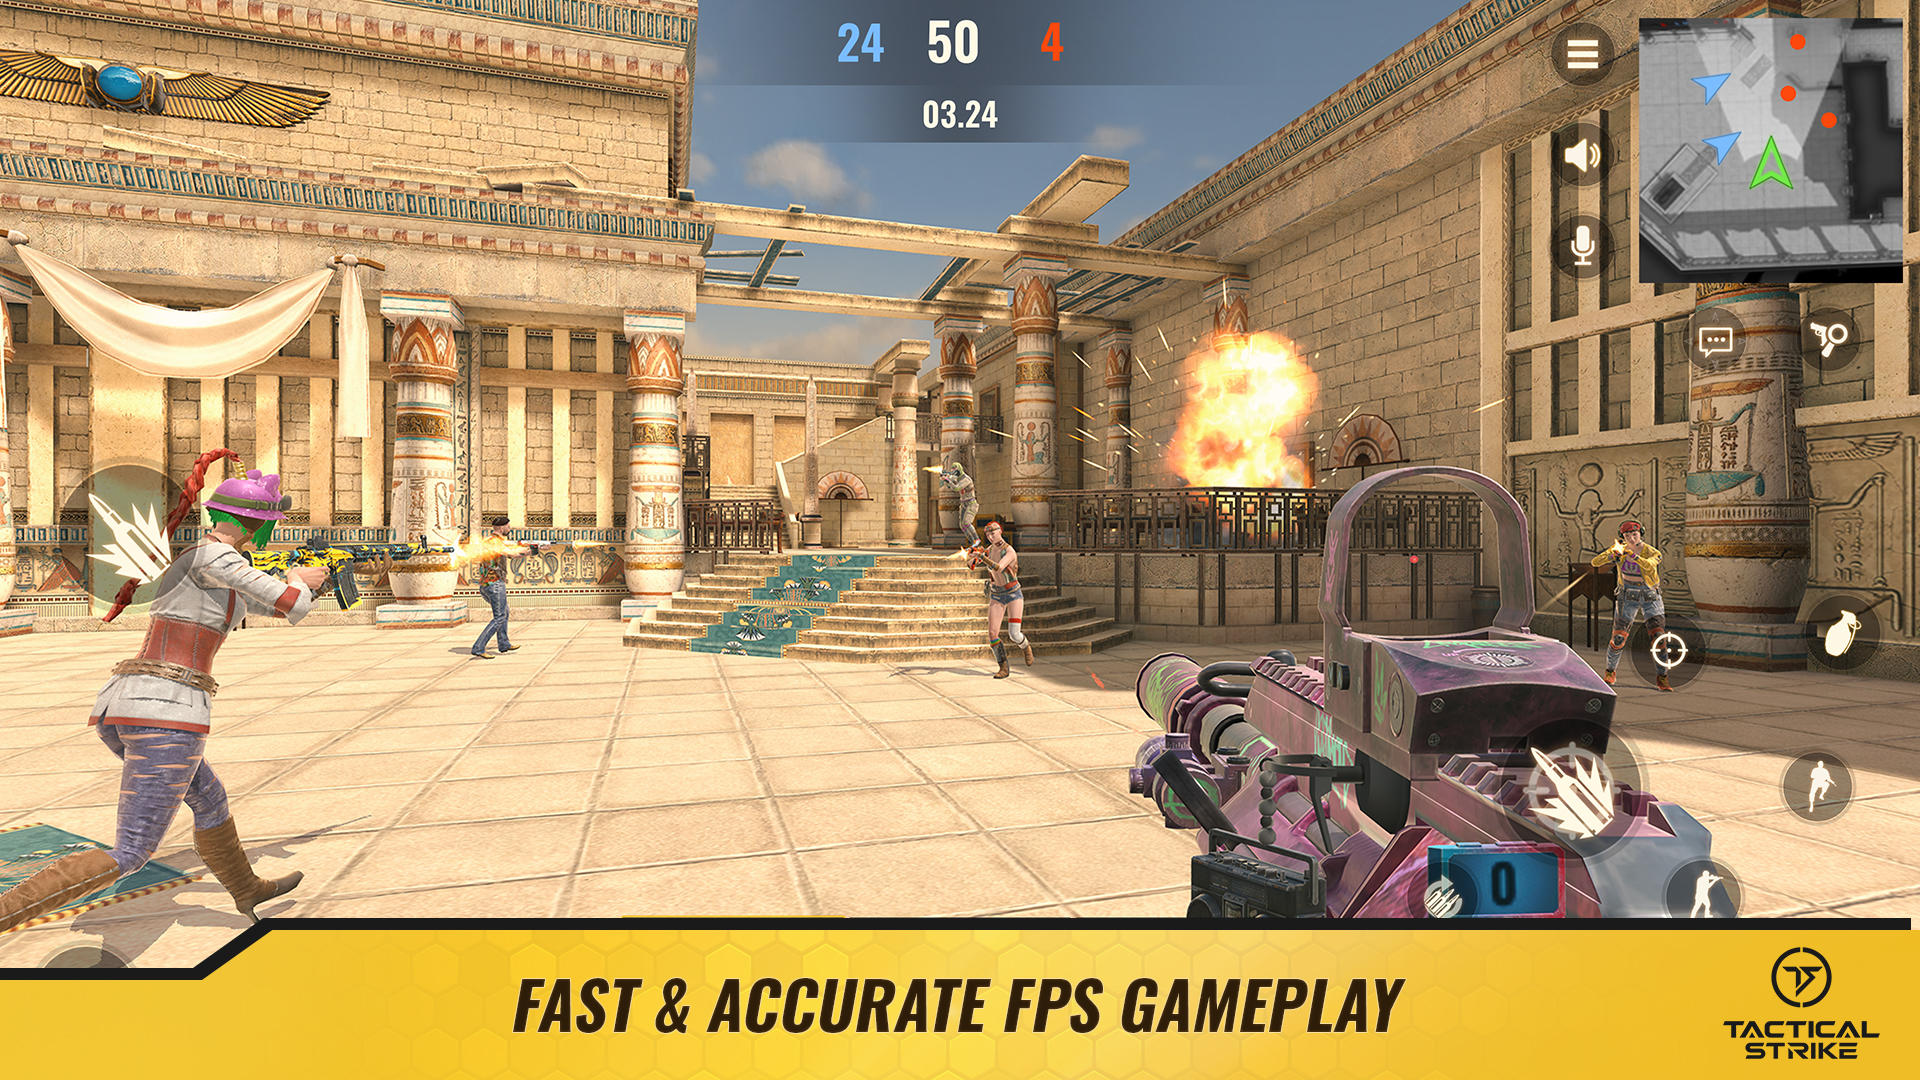 Screenshot 1 of Frappe tactique : FPS en ligne 3D 0.36.0